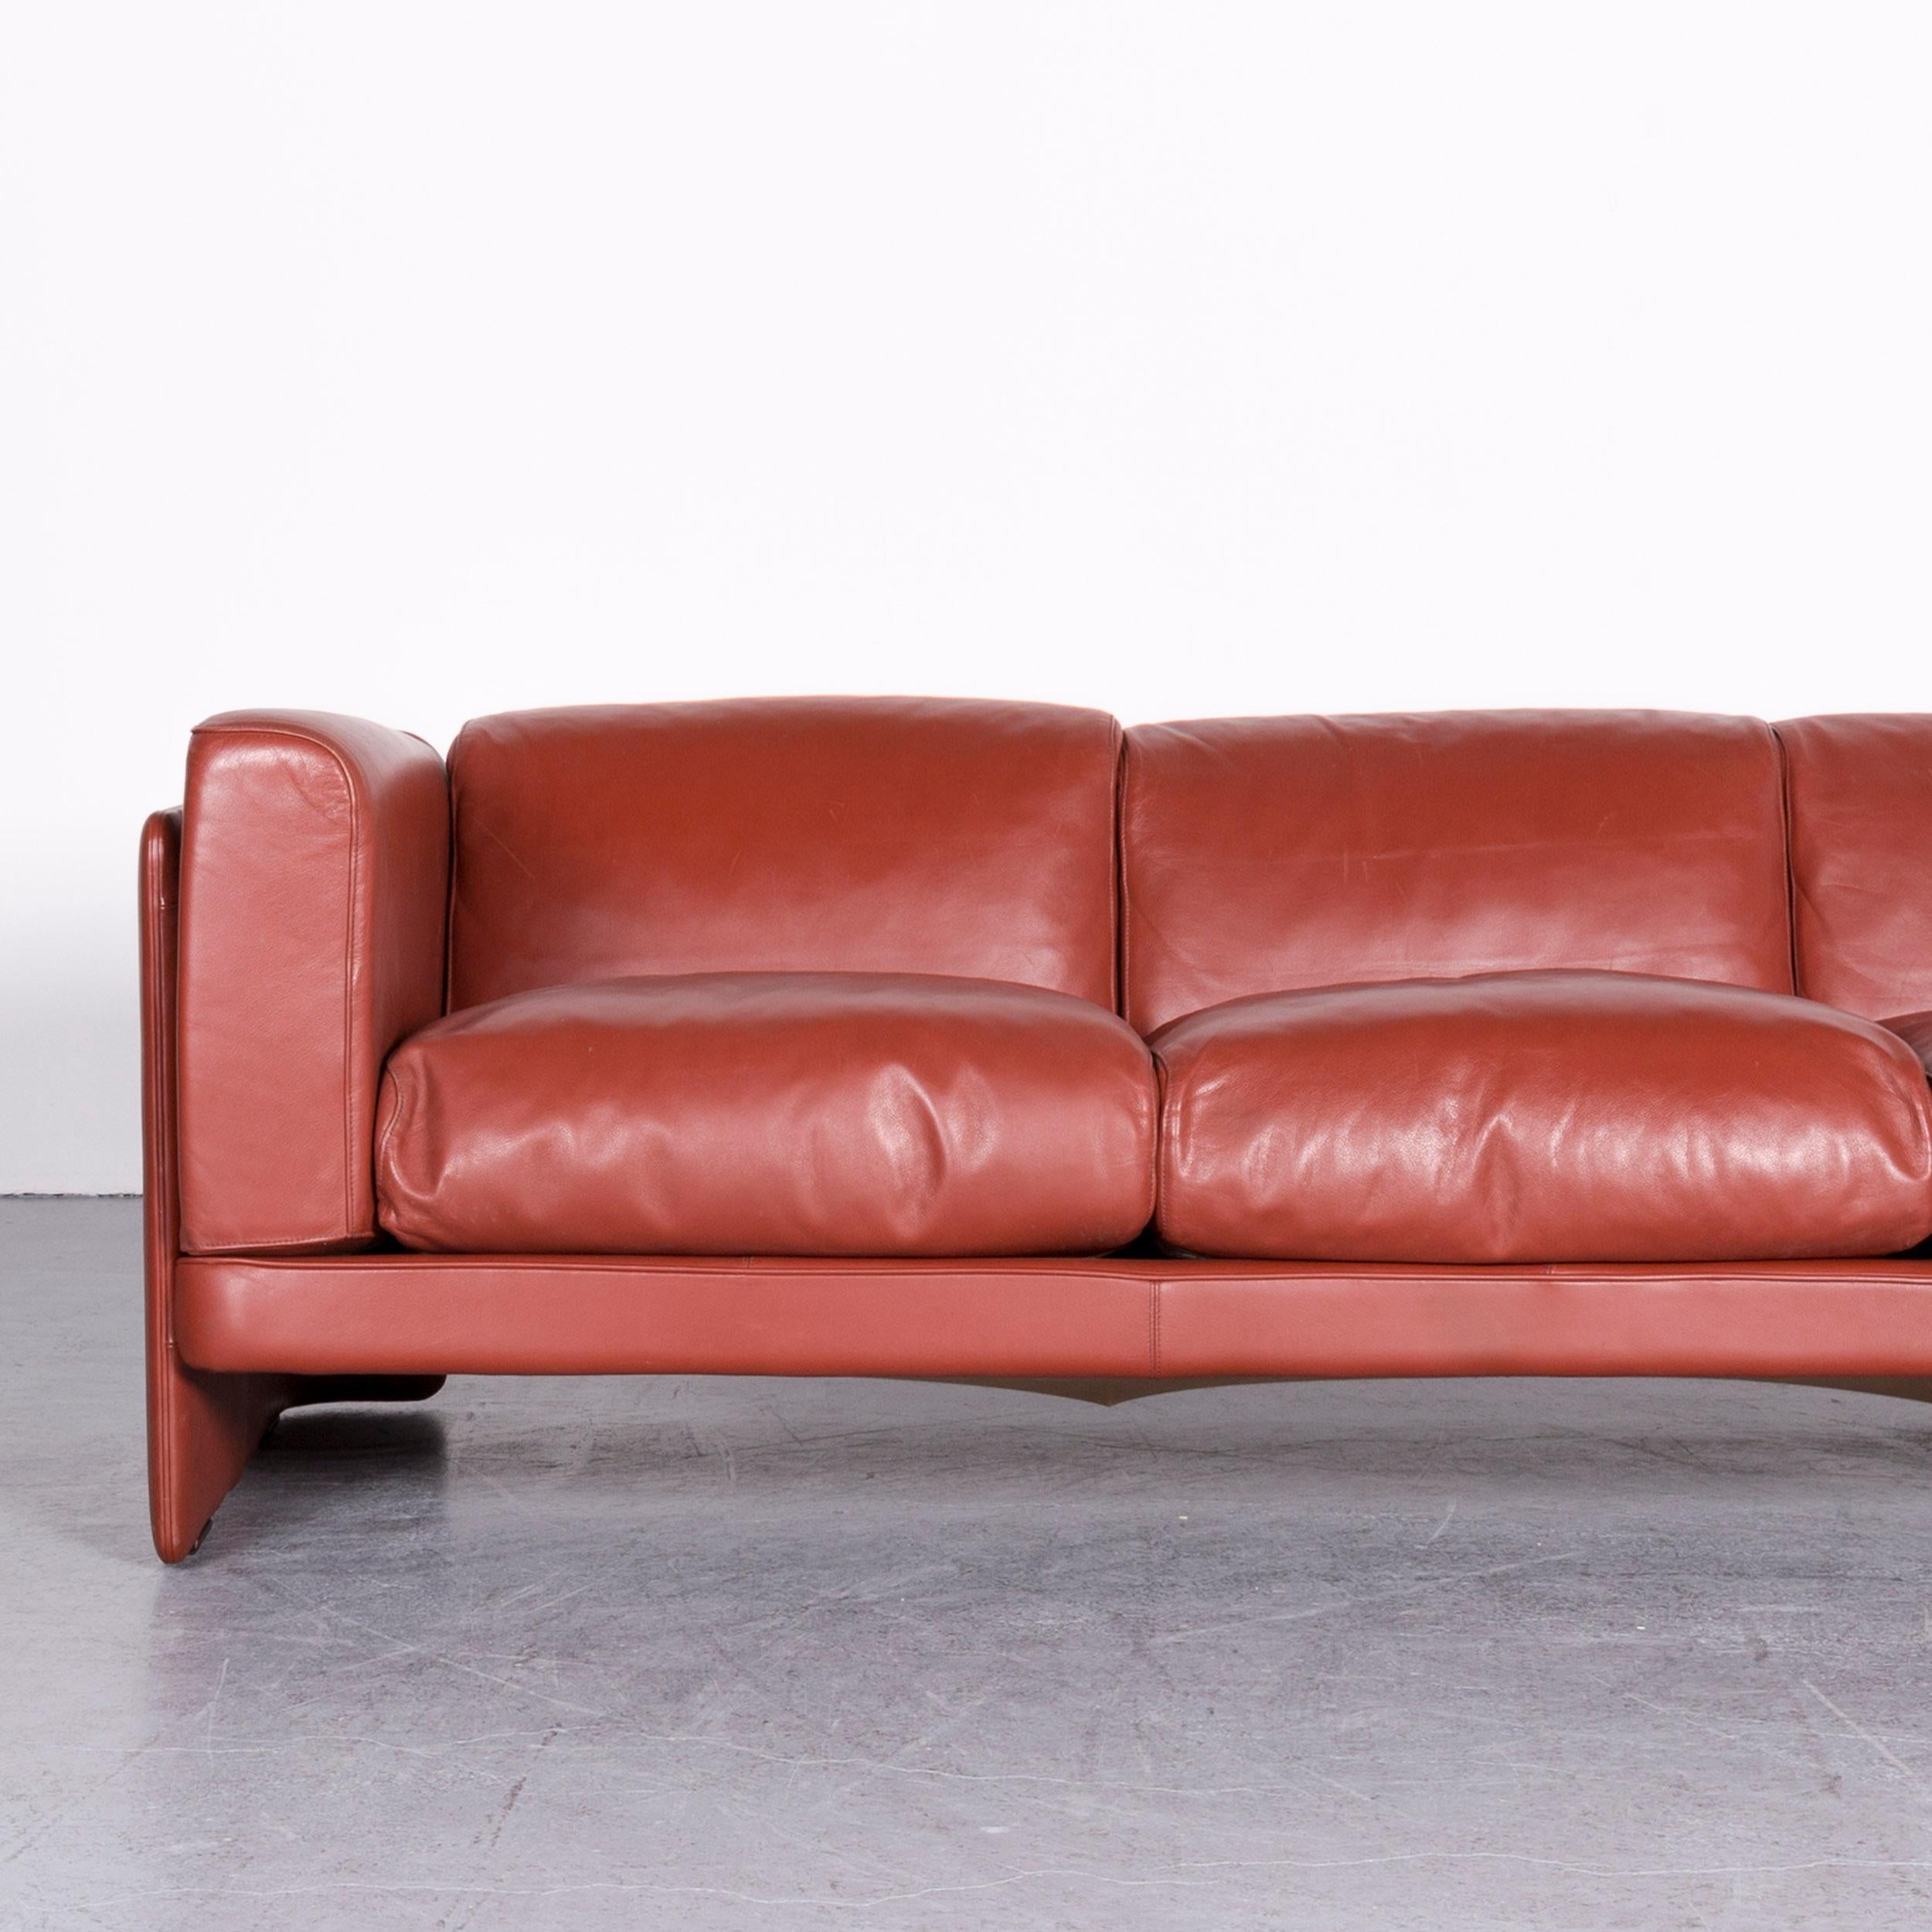 Poltrona Frau Le Chapanelle Designer Leather Sofa Orange by Tito Agnoli In Good Condition For Sale In Cologne, DE